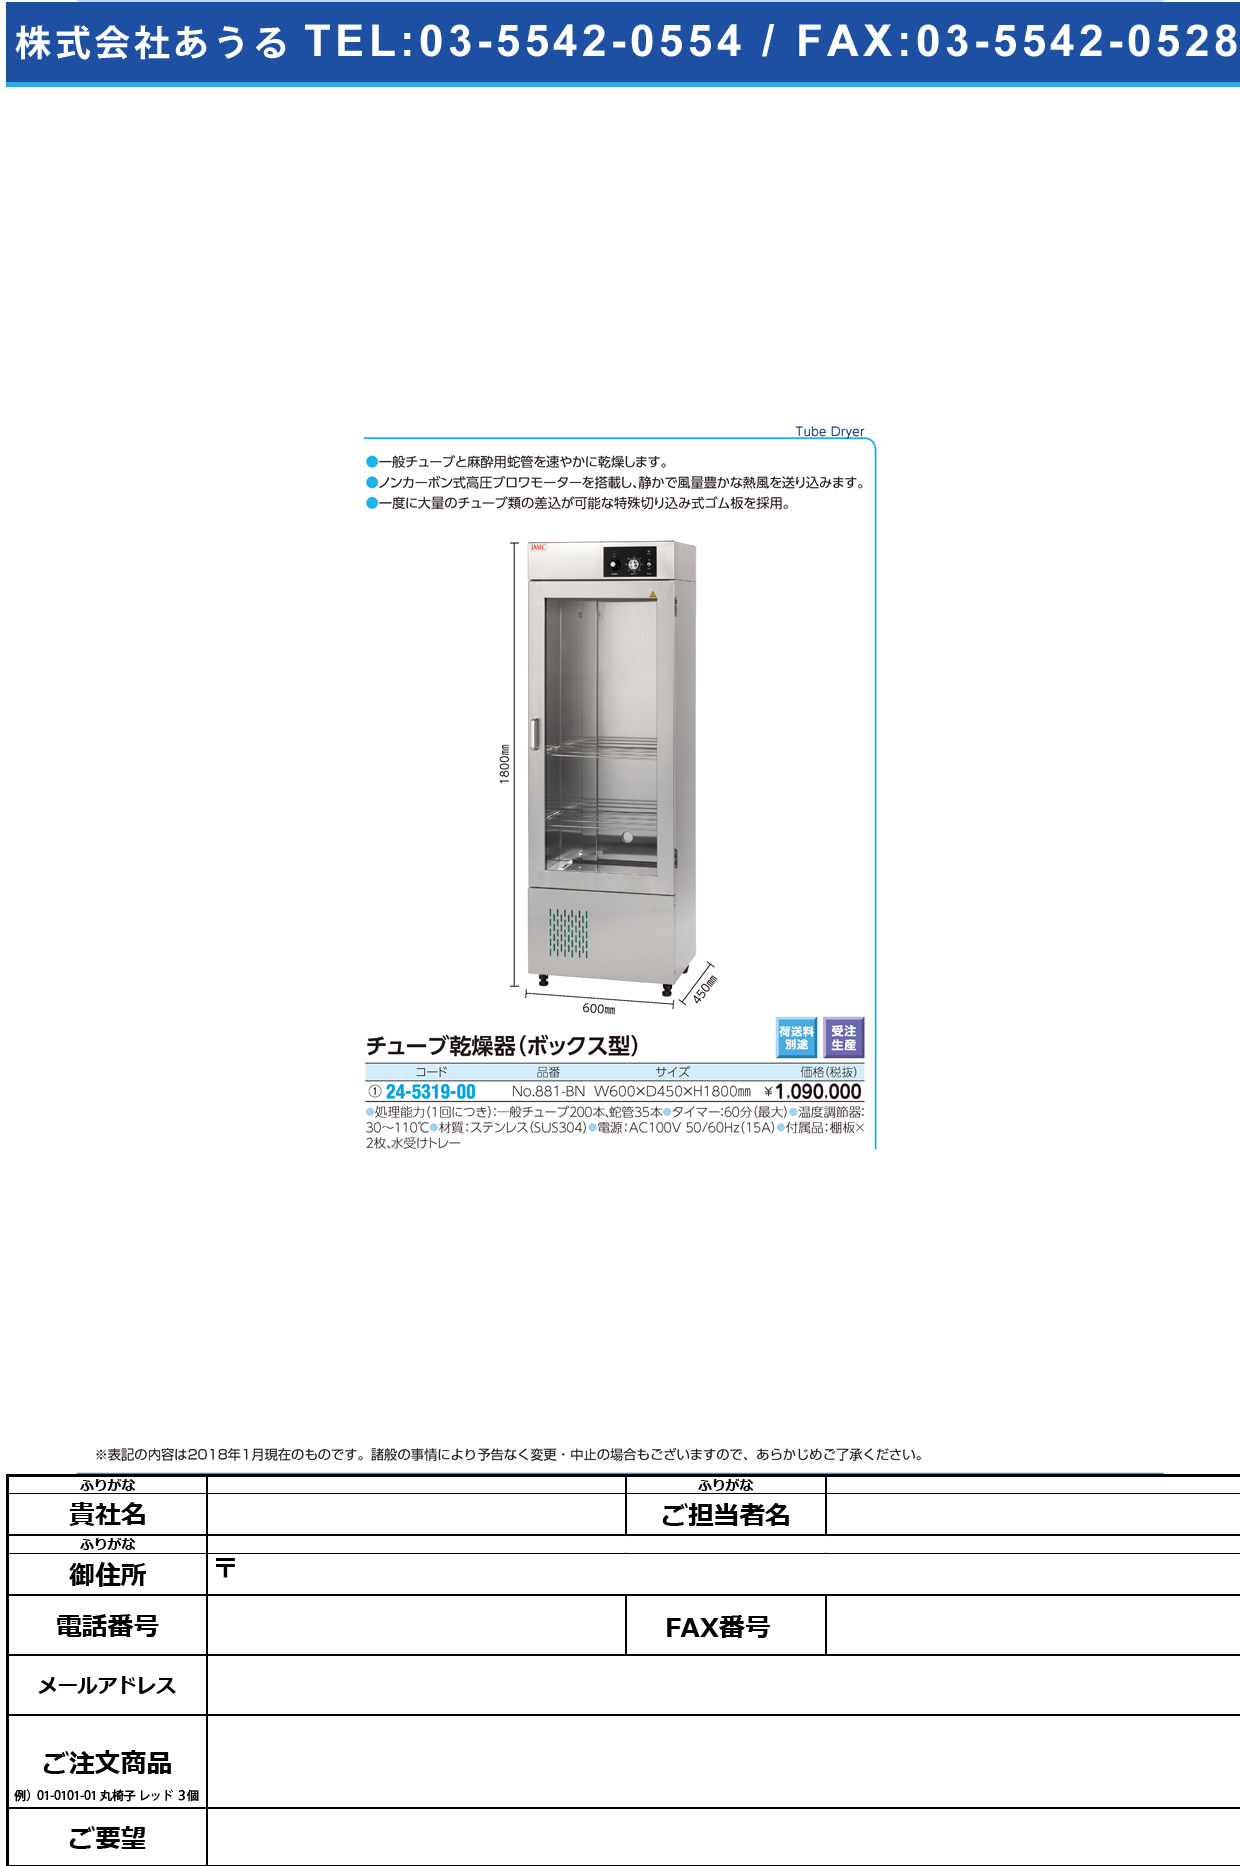 (24-5319-00)チューブ乾燥器（ボックス型） NO.881-BN ﾁｭｰﾌﾞｶﾝｿｳｷ(ﾎﾞｯｸｽｶﾞﾀ)【1台単位】【2018年カタログ商品】